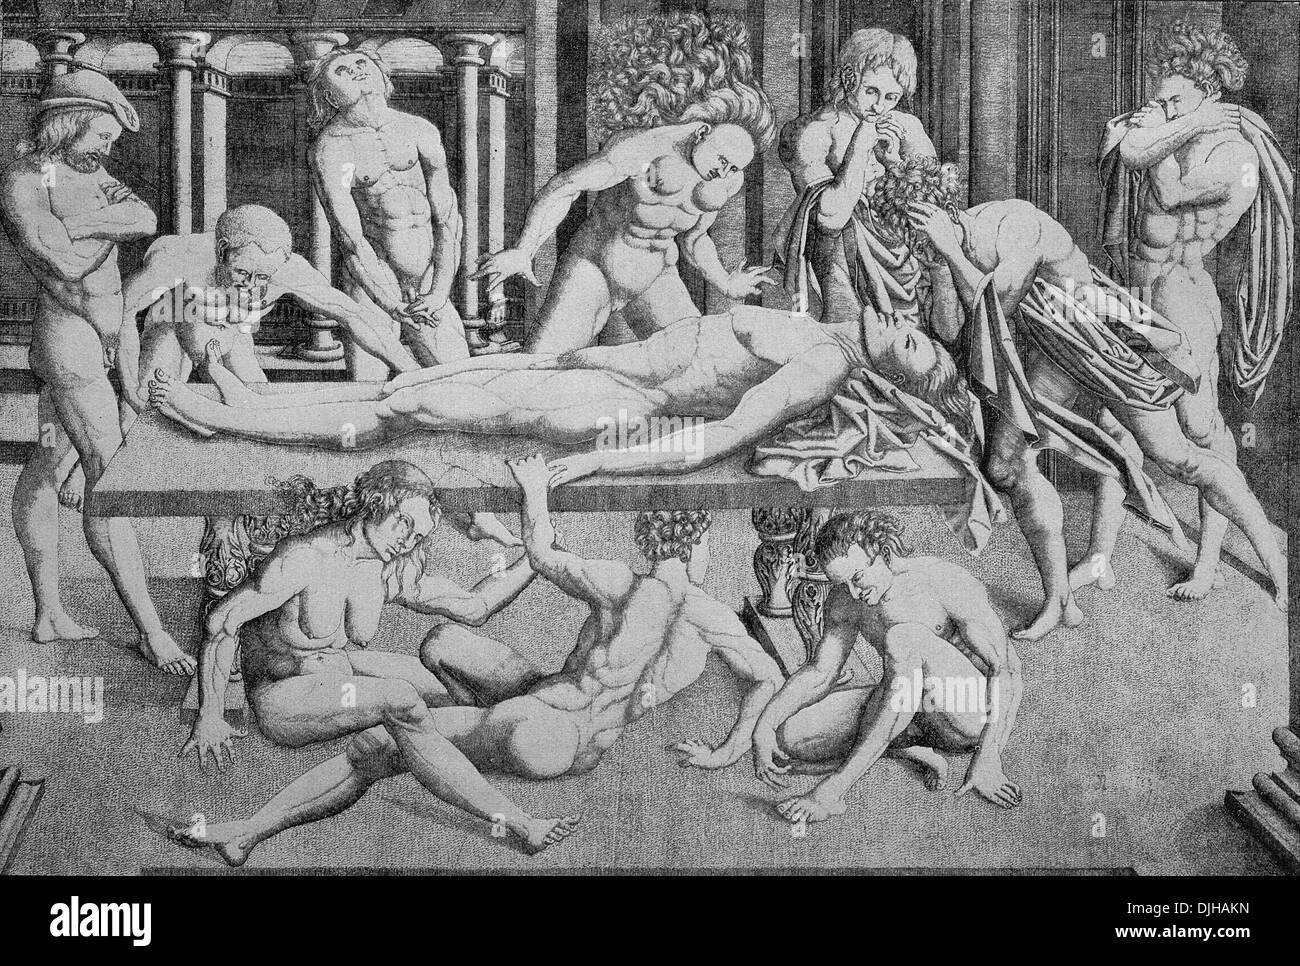 La mort du héros, gravure sur cuivre d'après une peinture de Mantegna Banque D'Images